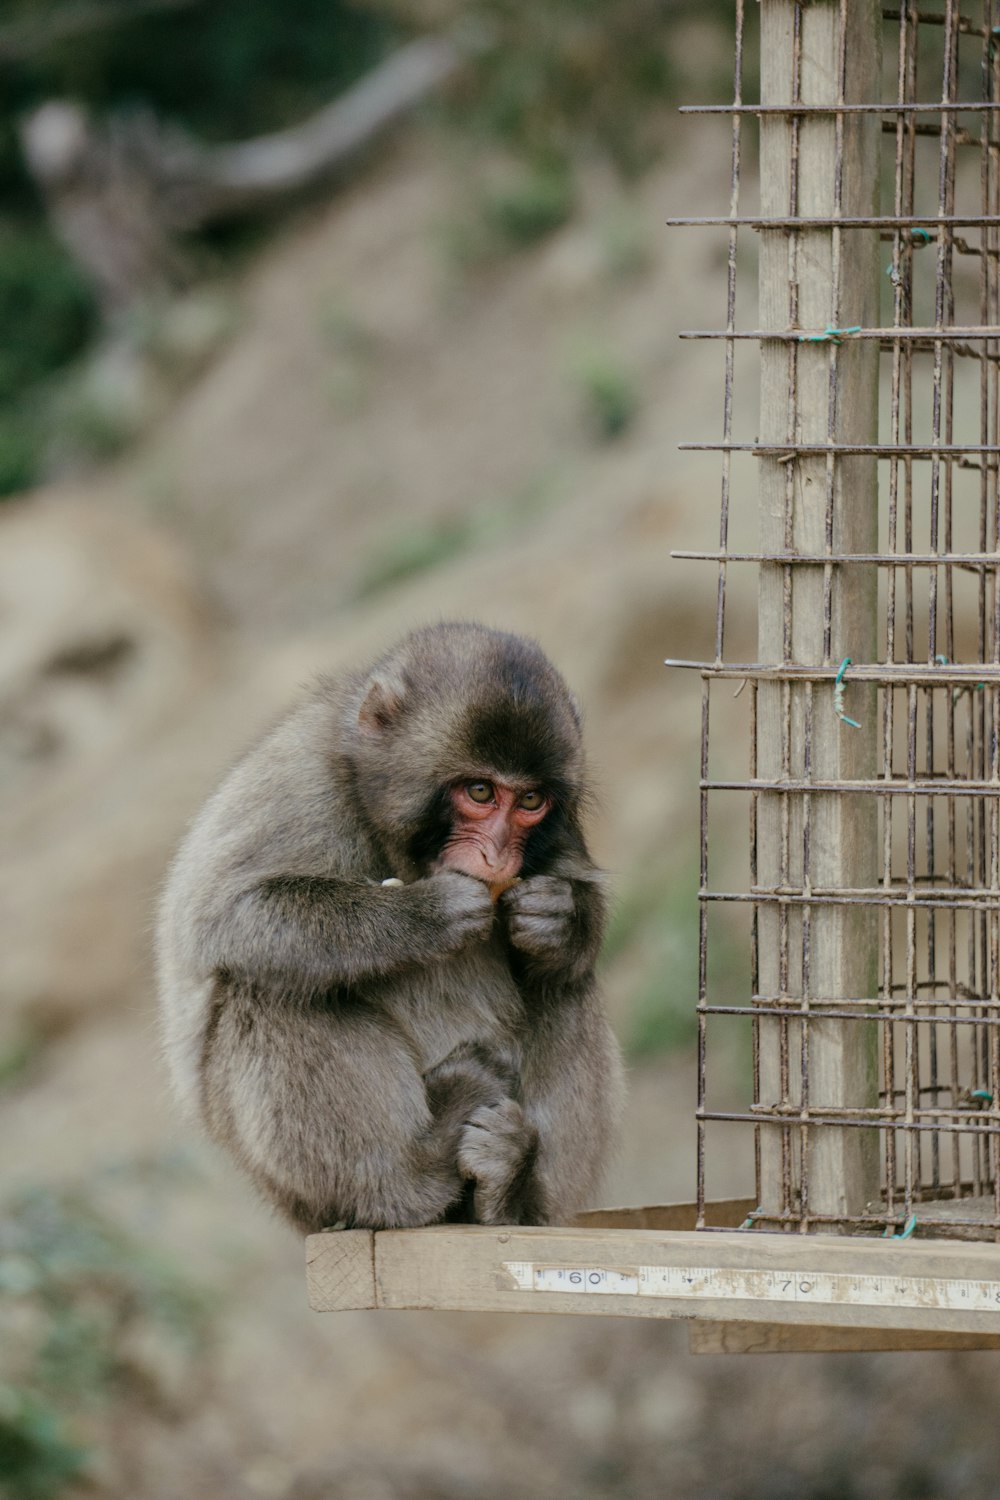 Un pequeño mono sentado en una repisa junto a una jaula